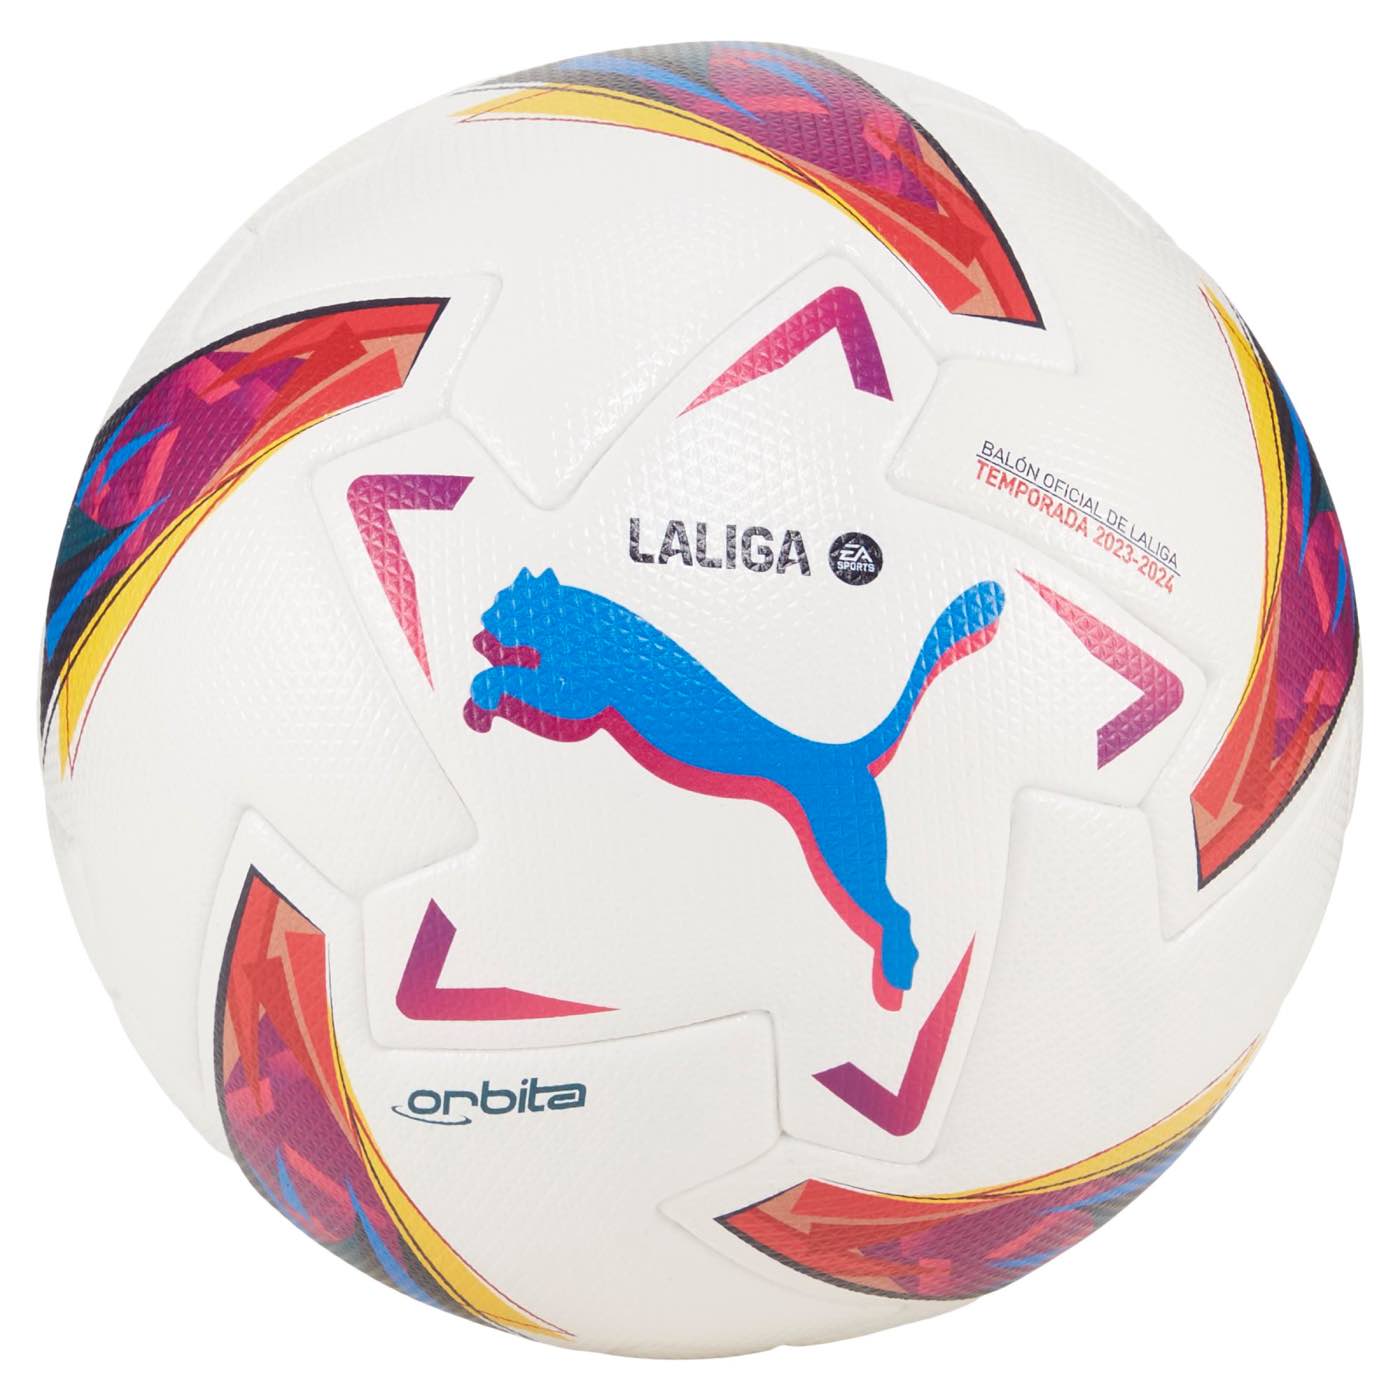 Official Match Soccer Balls– Premium Soccer